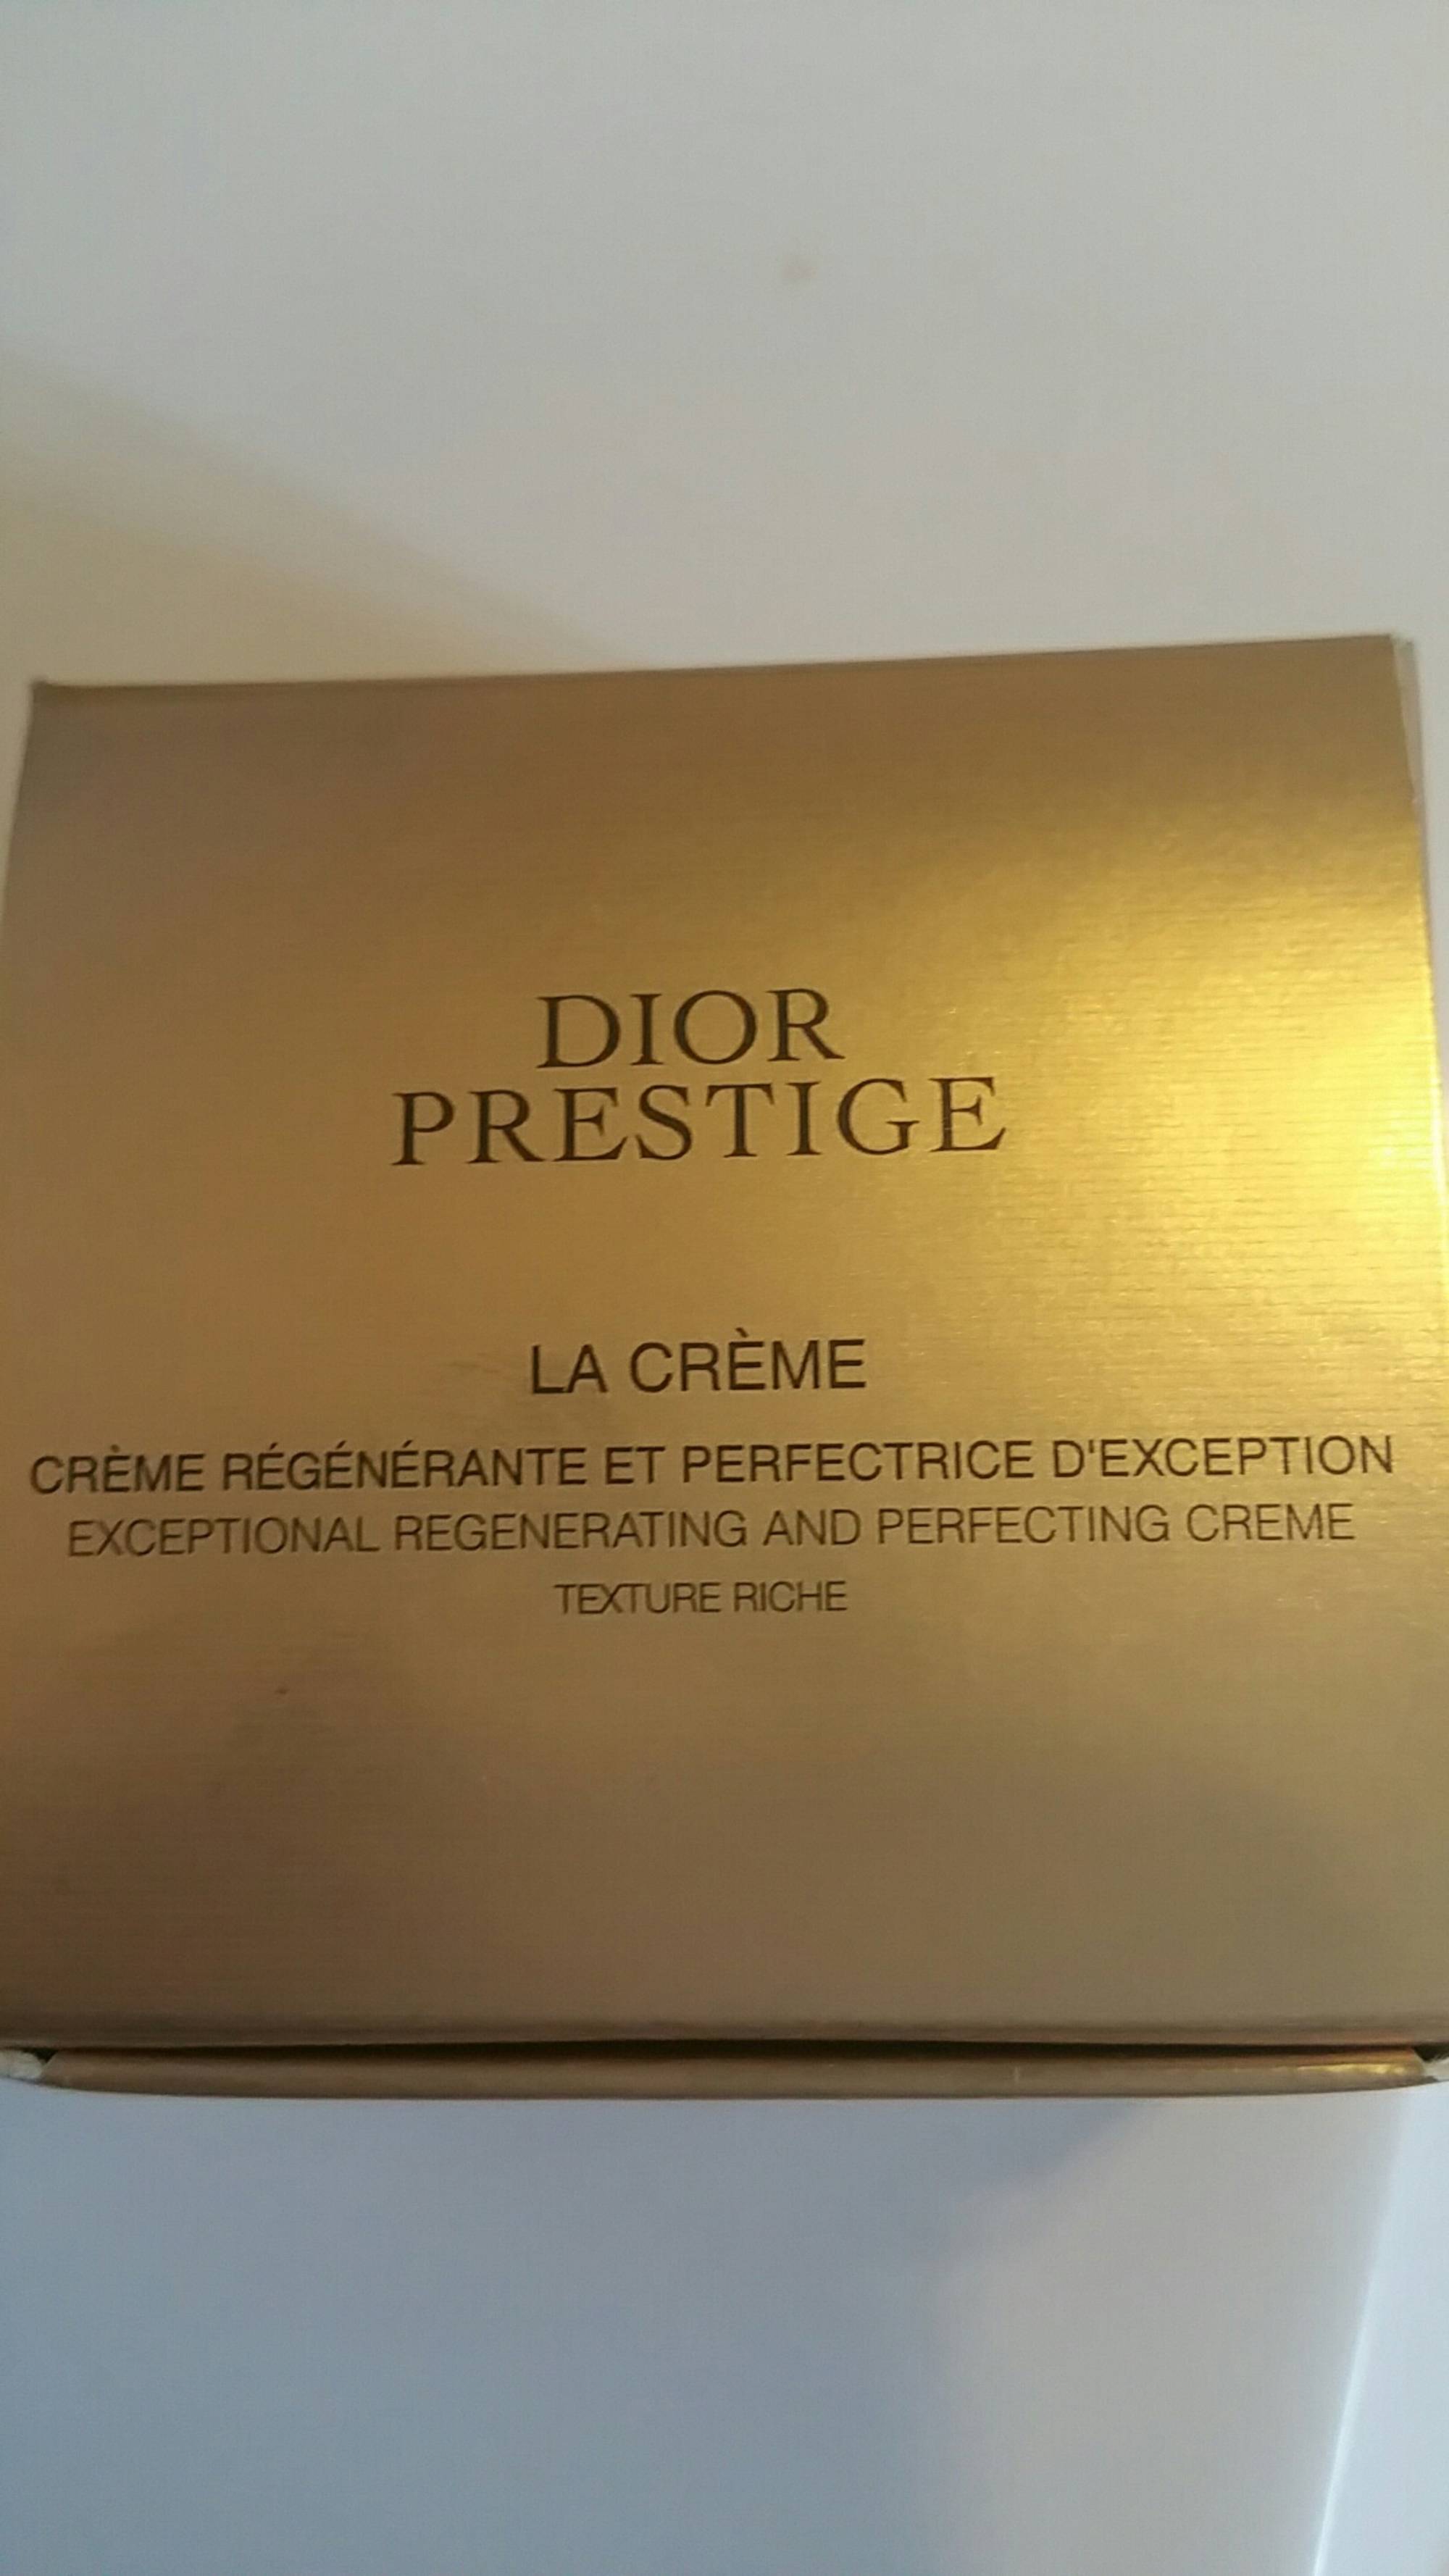 DIOR - Dior prestige - La crème 